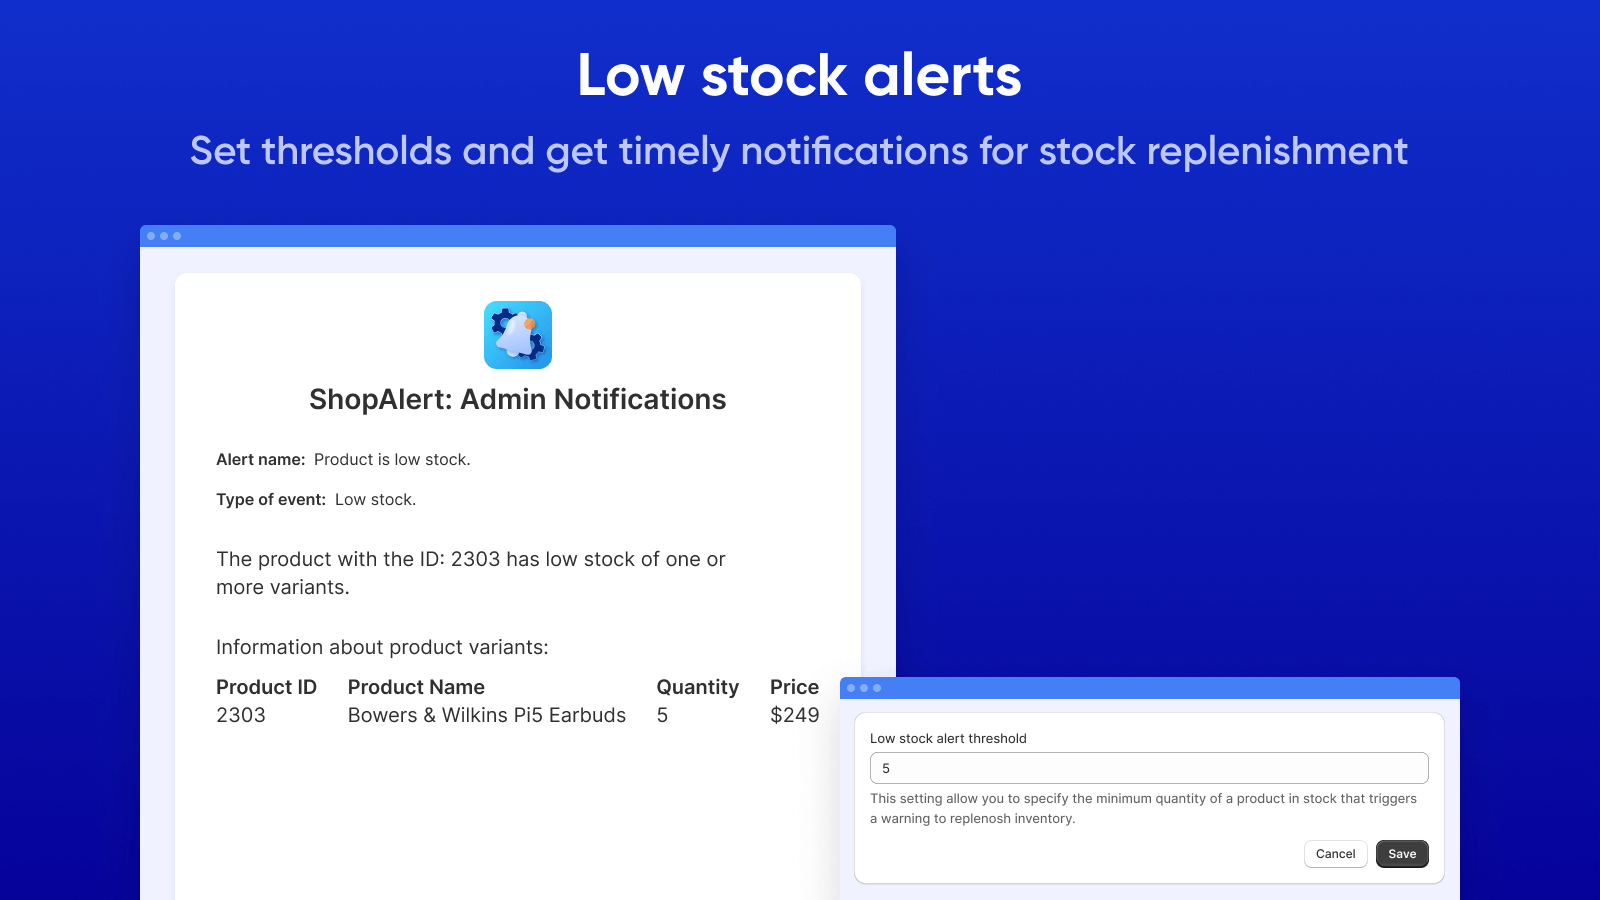 Recibe notificaciones de bajo stock para reabastecimiento de stock oportuno